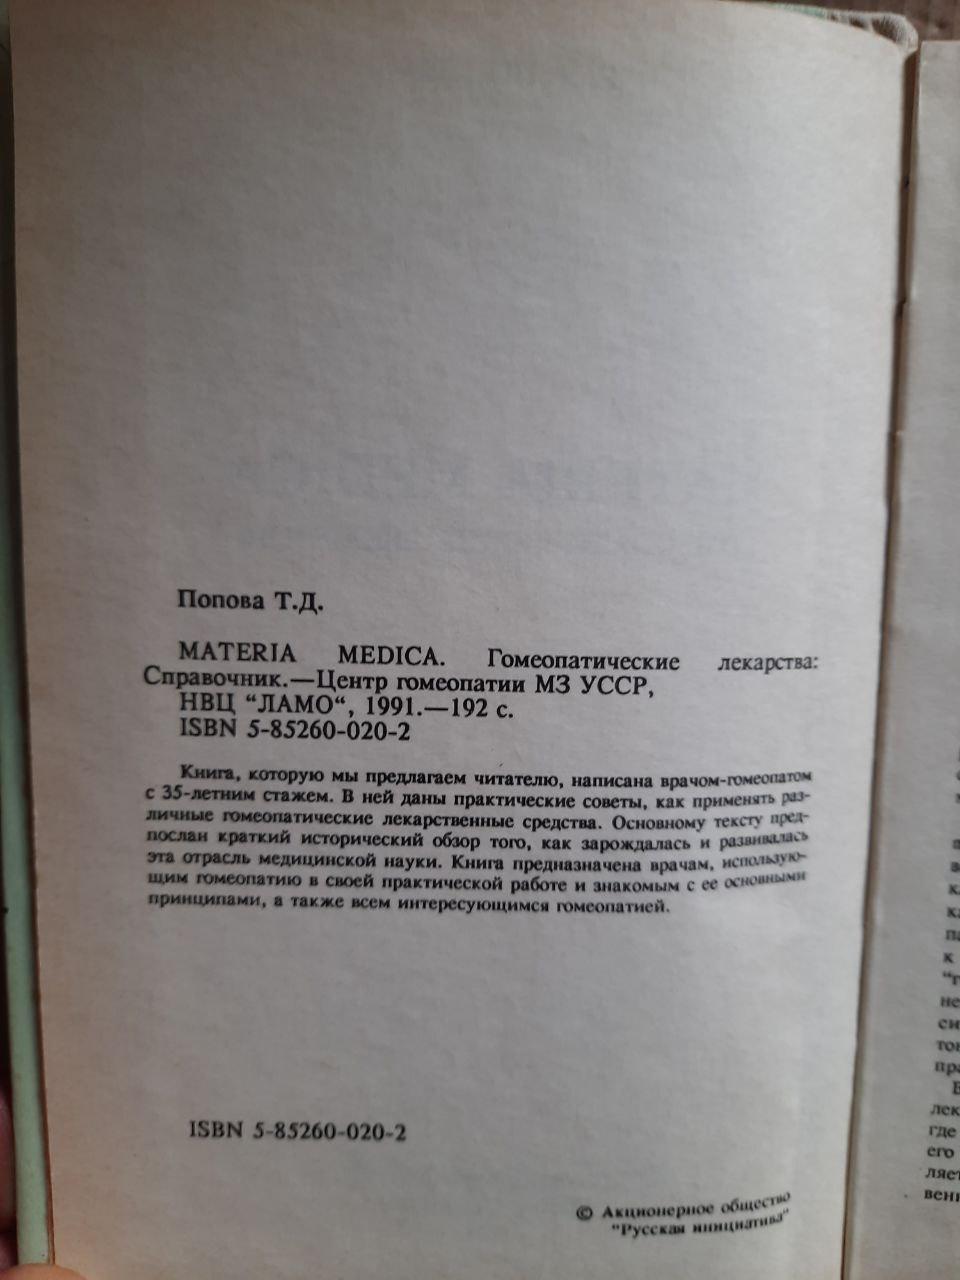 Materia Medica. Гомеопатические лекарства. Т. Д. Попова. 1991 год  (ID#1744264057), цена: 640 ₴, купить на Prom.ua